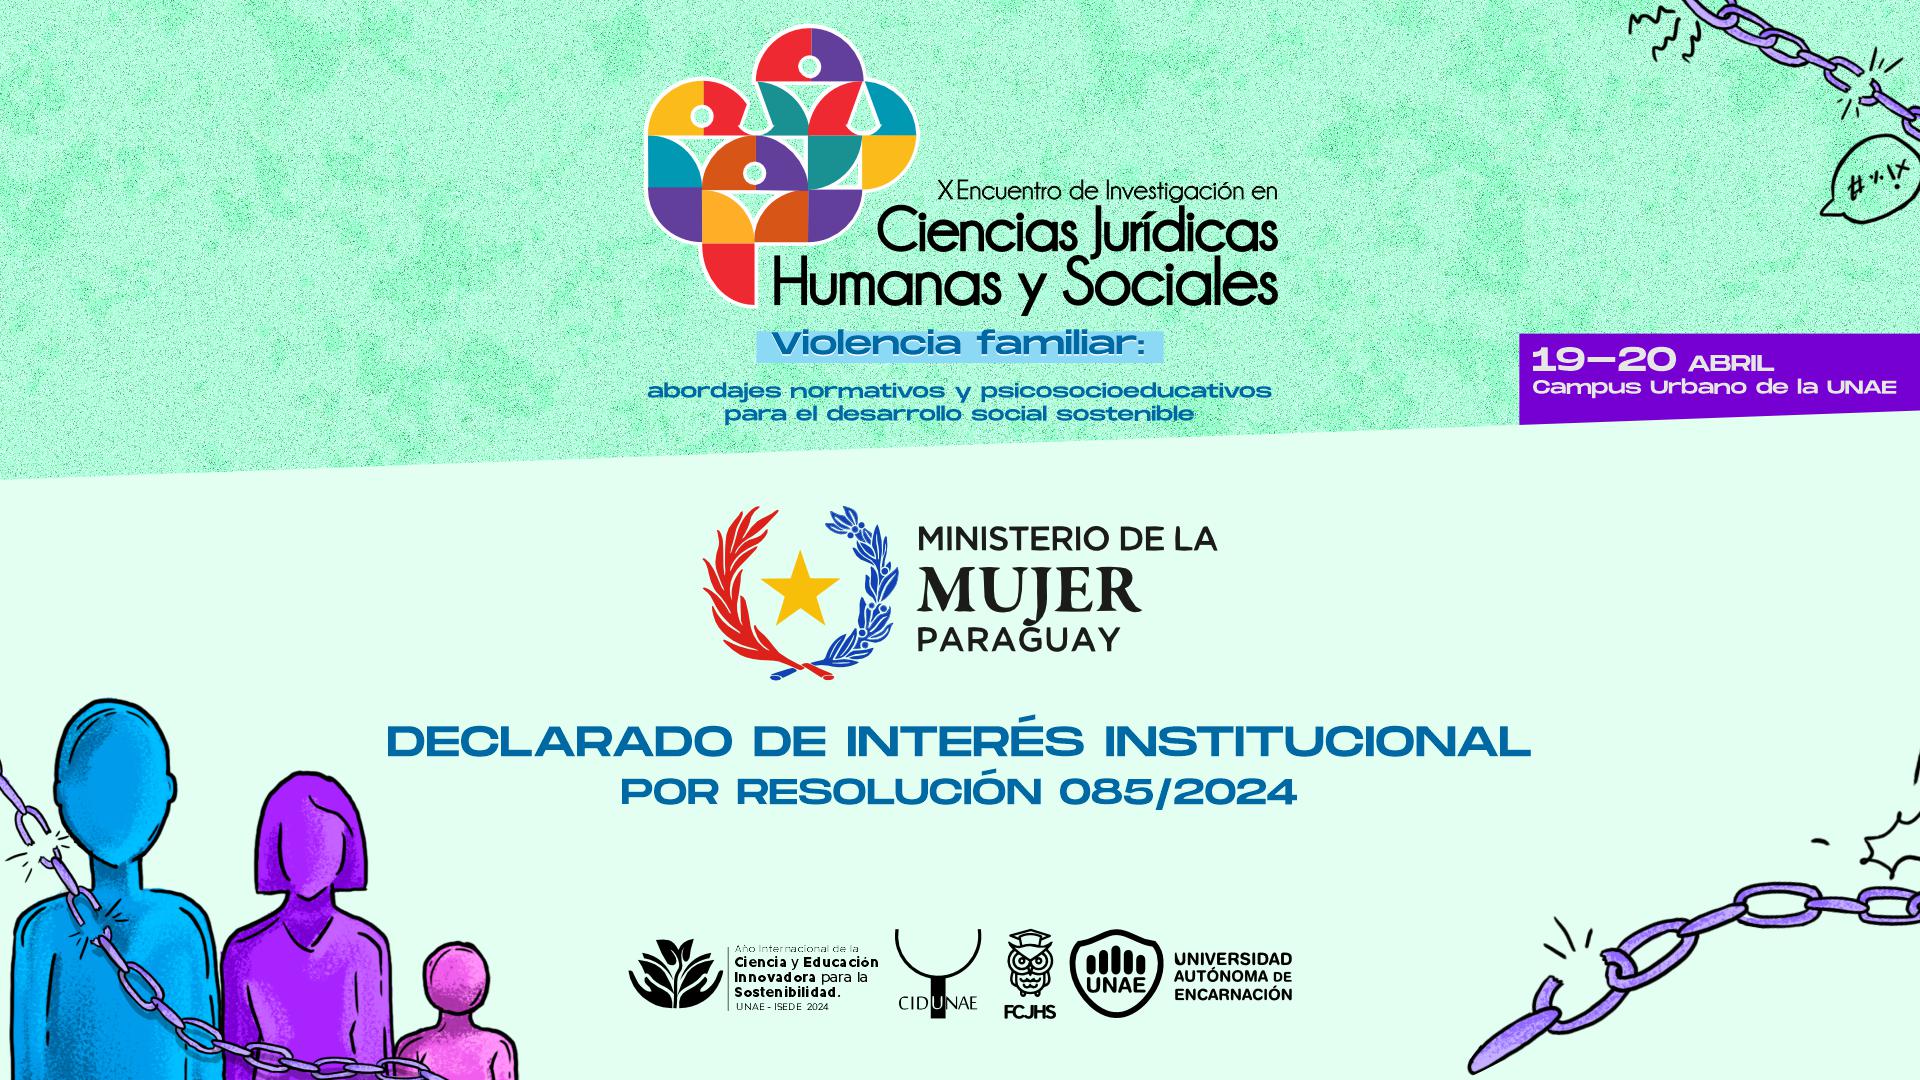 El Ministerio de la Mujer declara de Interés Institucional el X Encuentro de Investigación en Ciencias Jurídicas, Humanas y Sociales